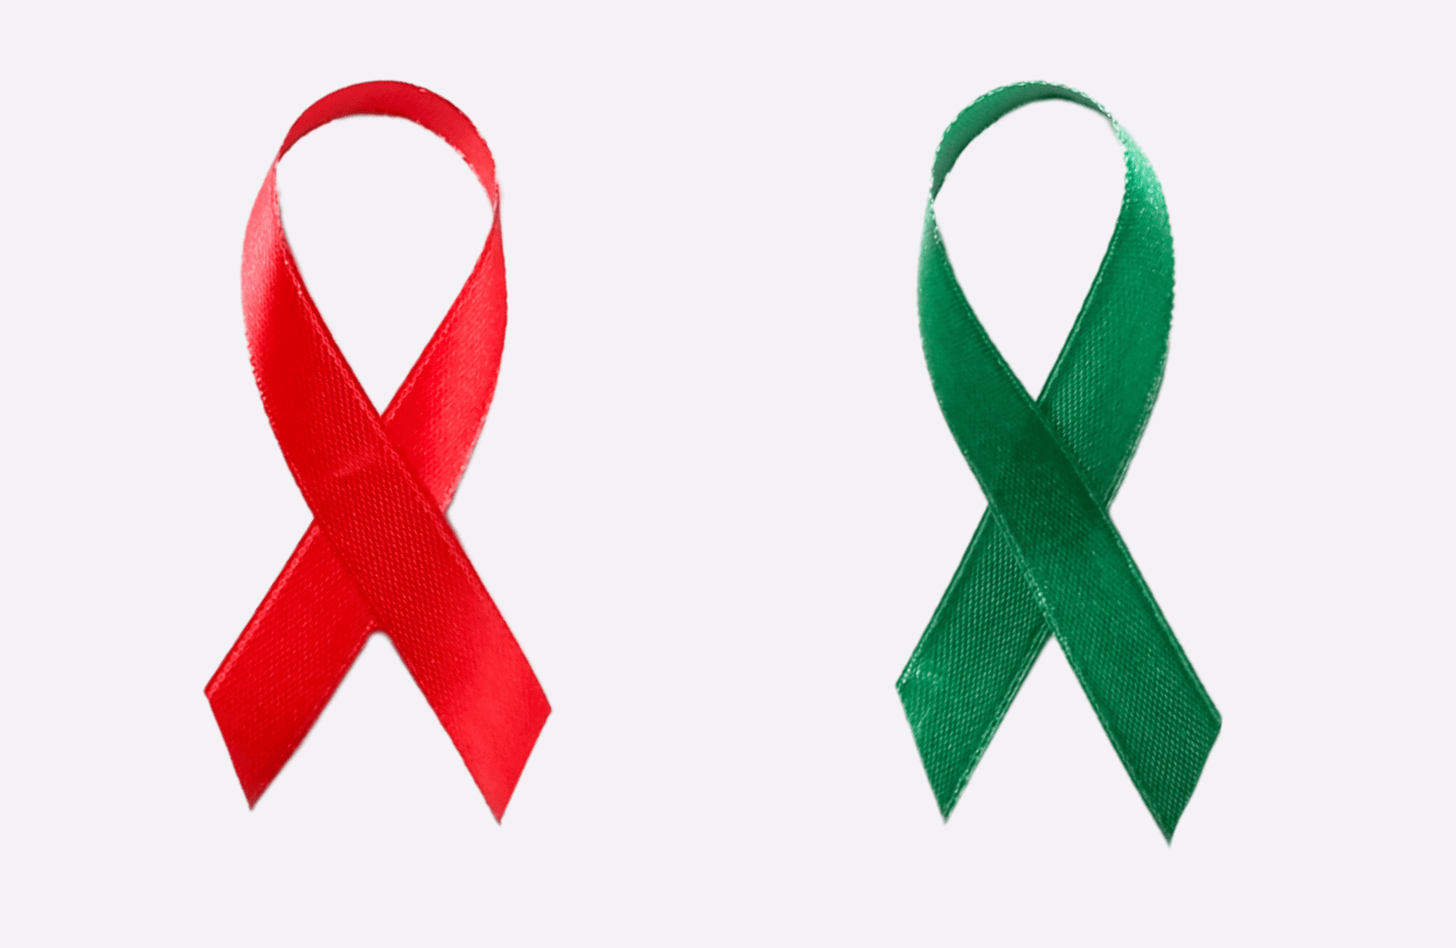 A red ribbon representing HIV awareness and a green ribbon representing organ donation and transplant awareness